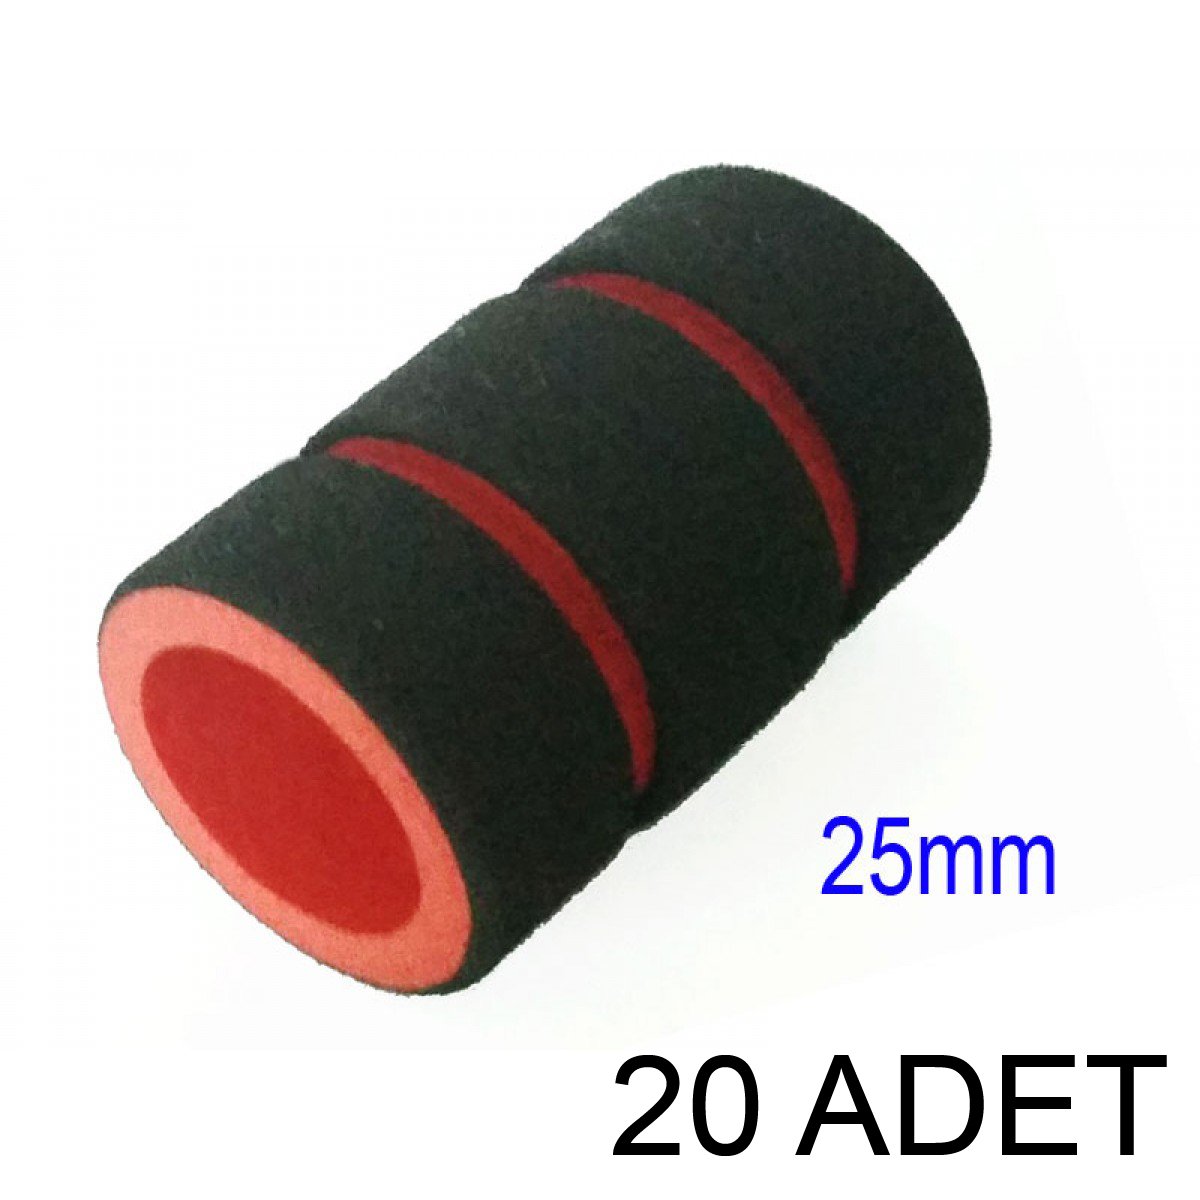 20 Adet Yumuşak Köpük Grip Tutacak Kılıfı 25 mm Kırmızı Siyah Cover